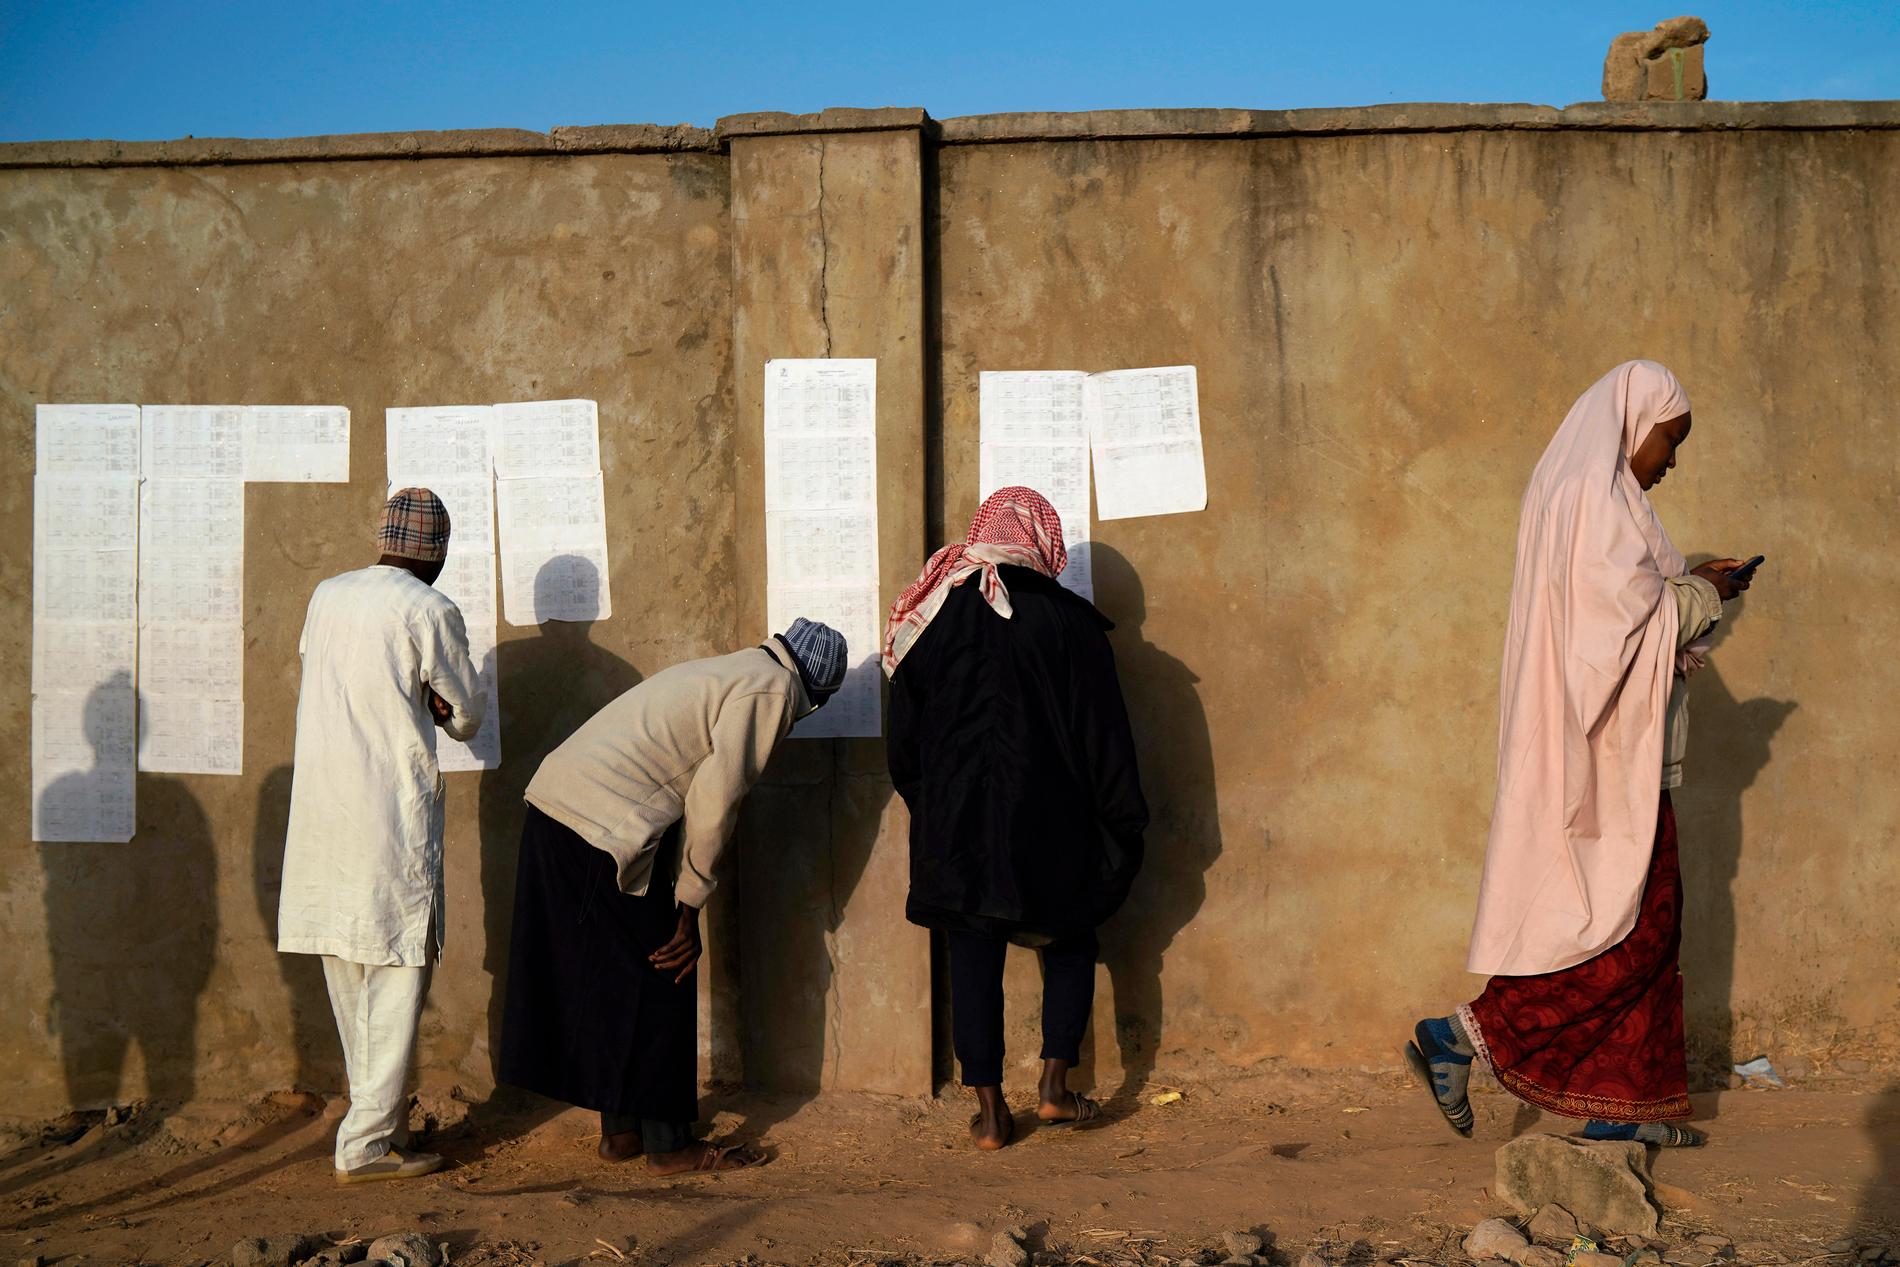 Väljarlistor kontrolleras vid en vallokal i Kaduna i Nigeria – vars planerade val i lördags dock sköts upp.